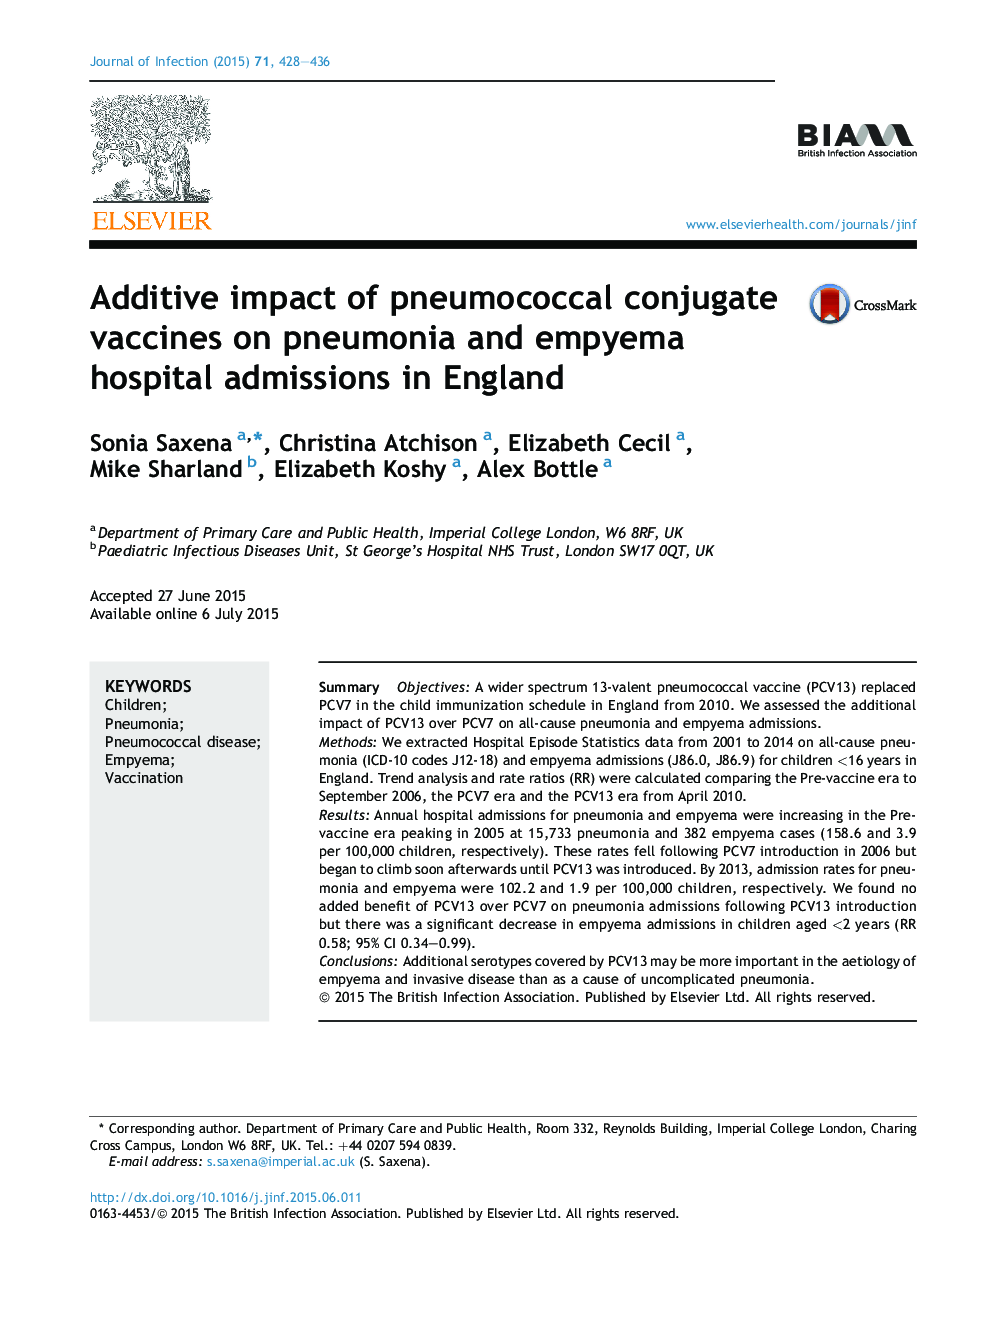 اثر افزایشی واکسن های پنوموکوک کوئینژاد بر پذیرش بیمار مبتلا به پنومونی و امپیتمی در انگلستان 